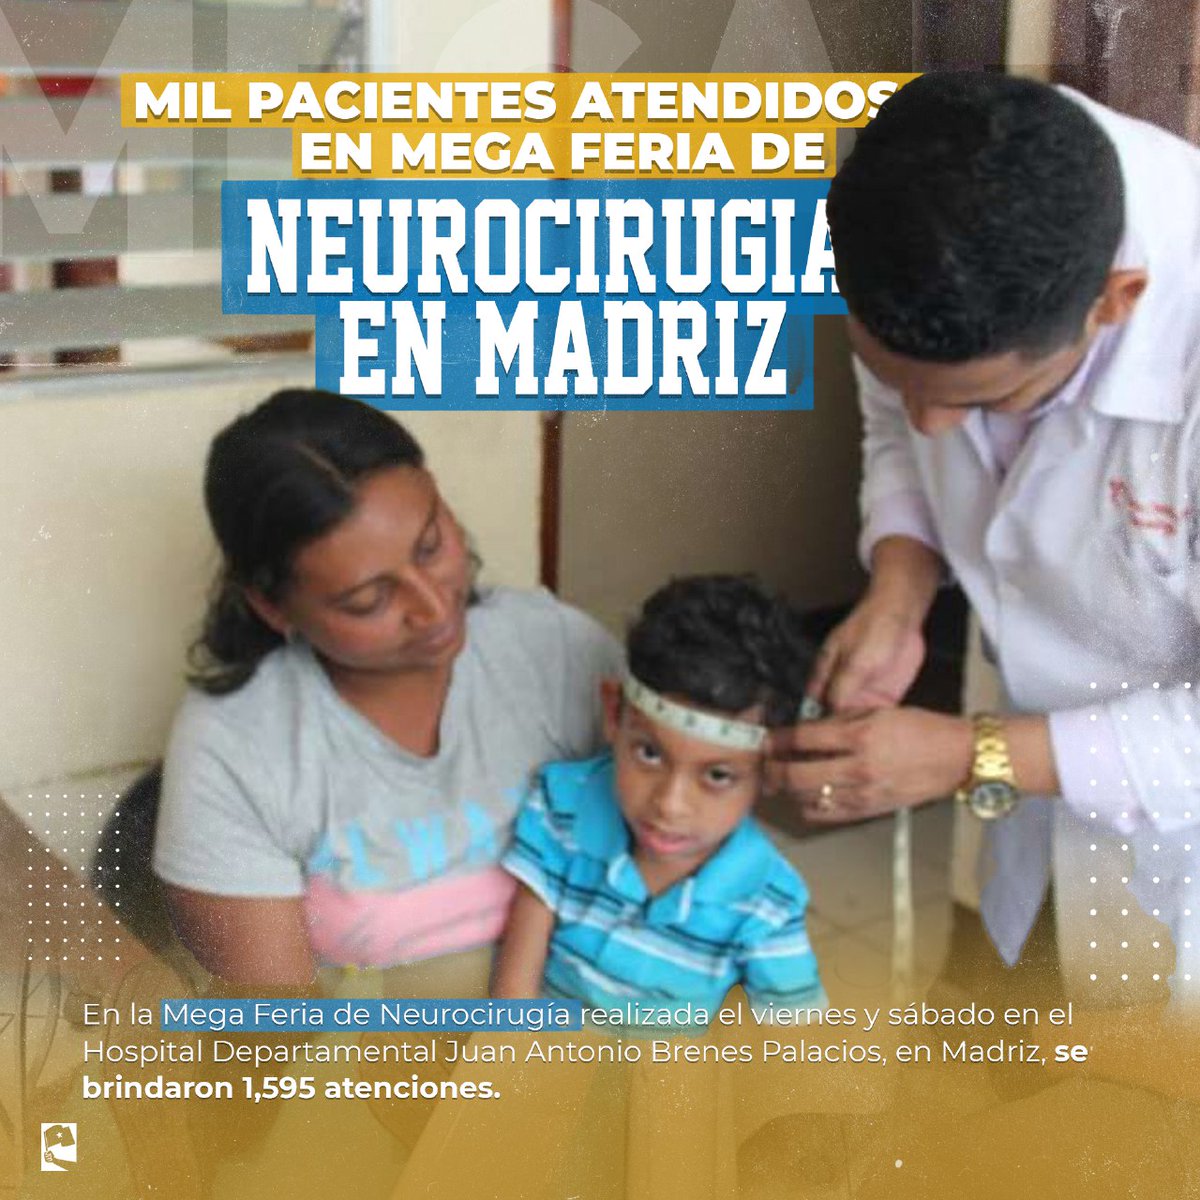 La Mega Feria de Neurocirugía del viernes y sábado en el Hospital Departamental Juan Antonio Brenes Palacios, en Madriz, fue un rotundo éxito! 🎉 Se proporcionaron un total de 1,595 atenciones, ¡un logro fenomenal para la comunidad!🏥💼 #SomosVictoriasVerdaderas